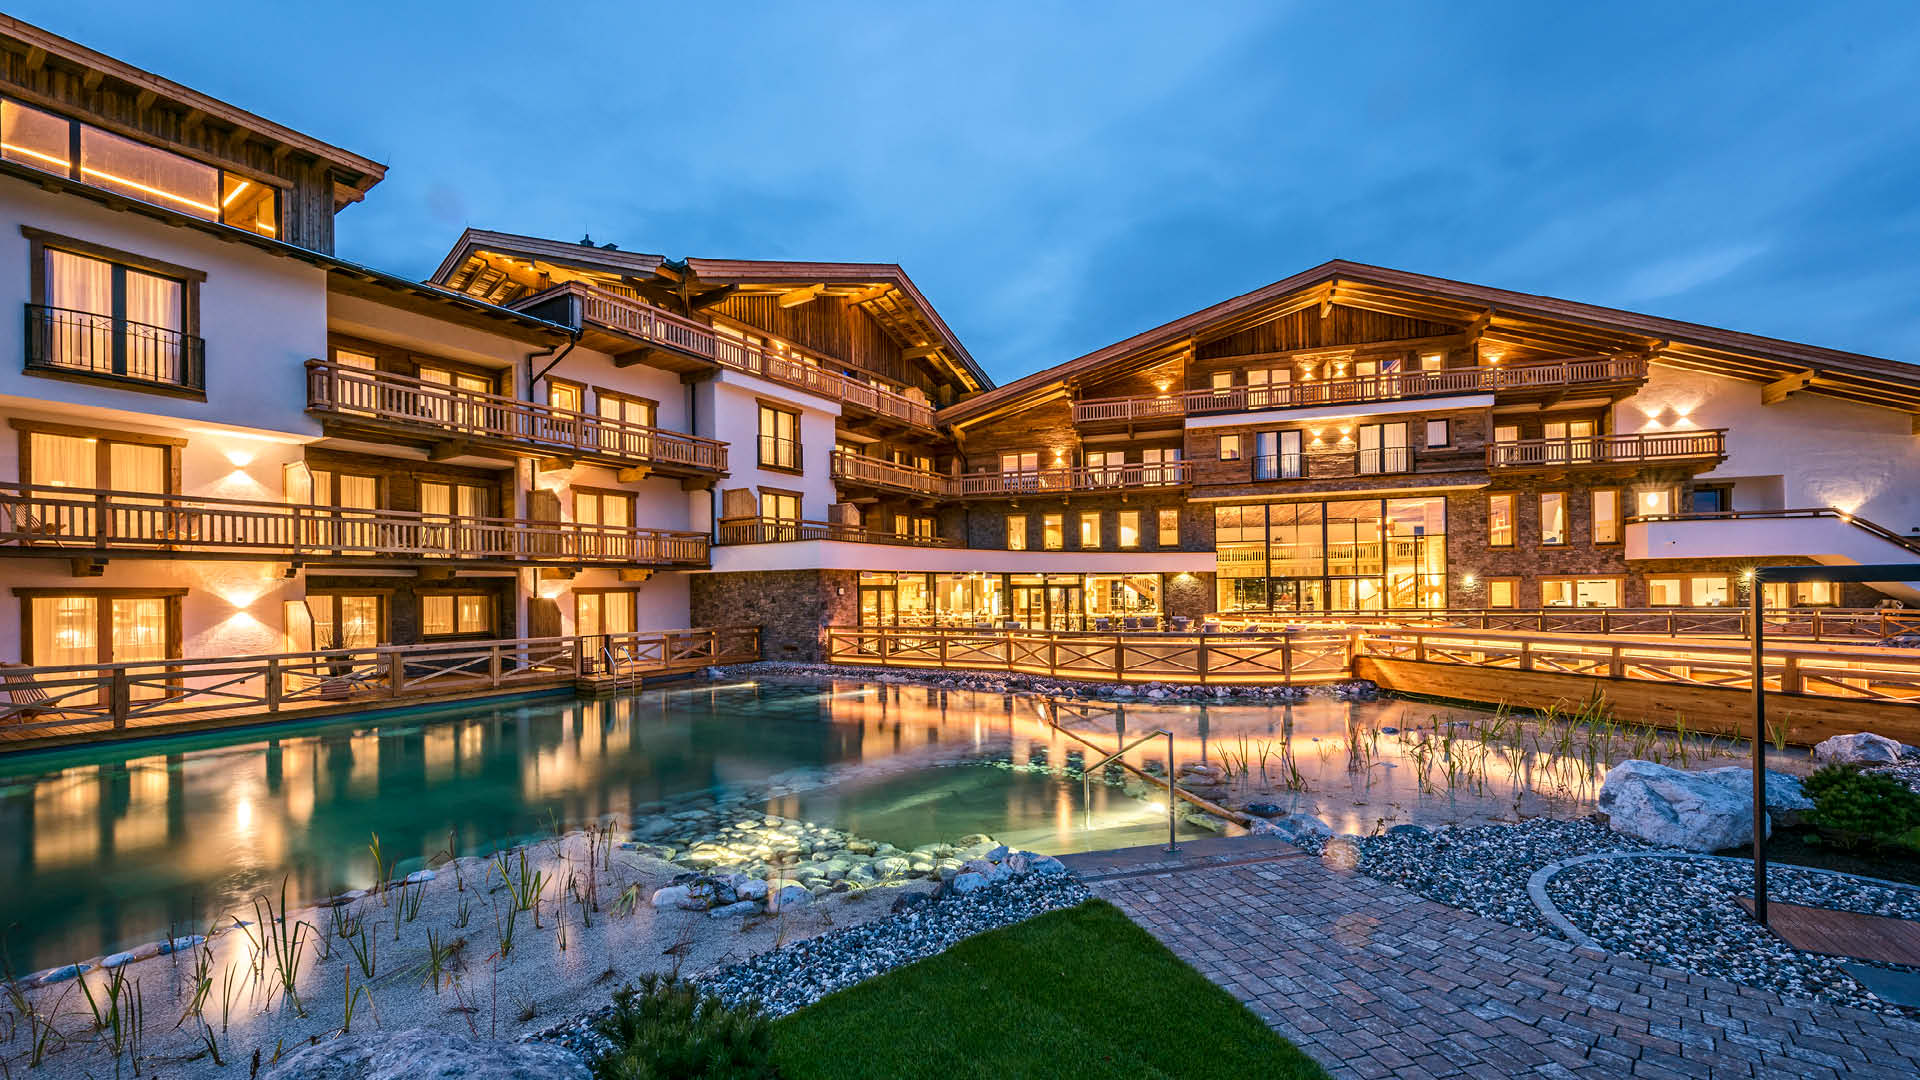 Luxury resort on the Alps